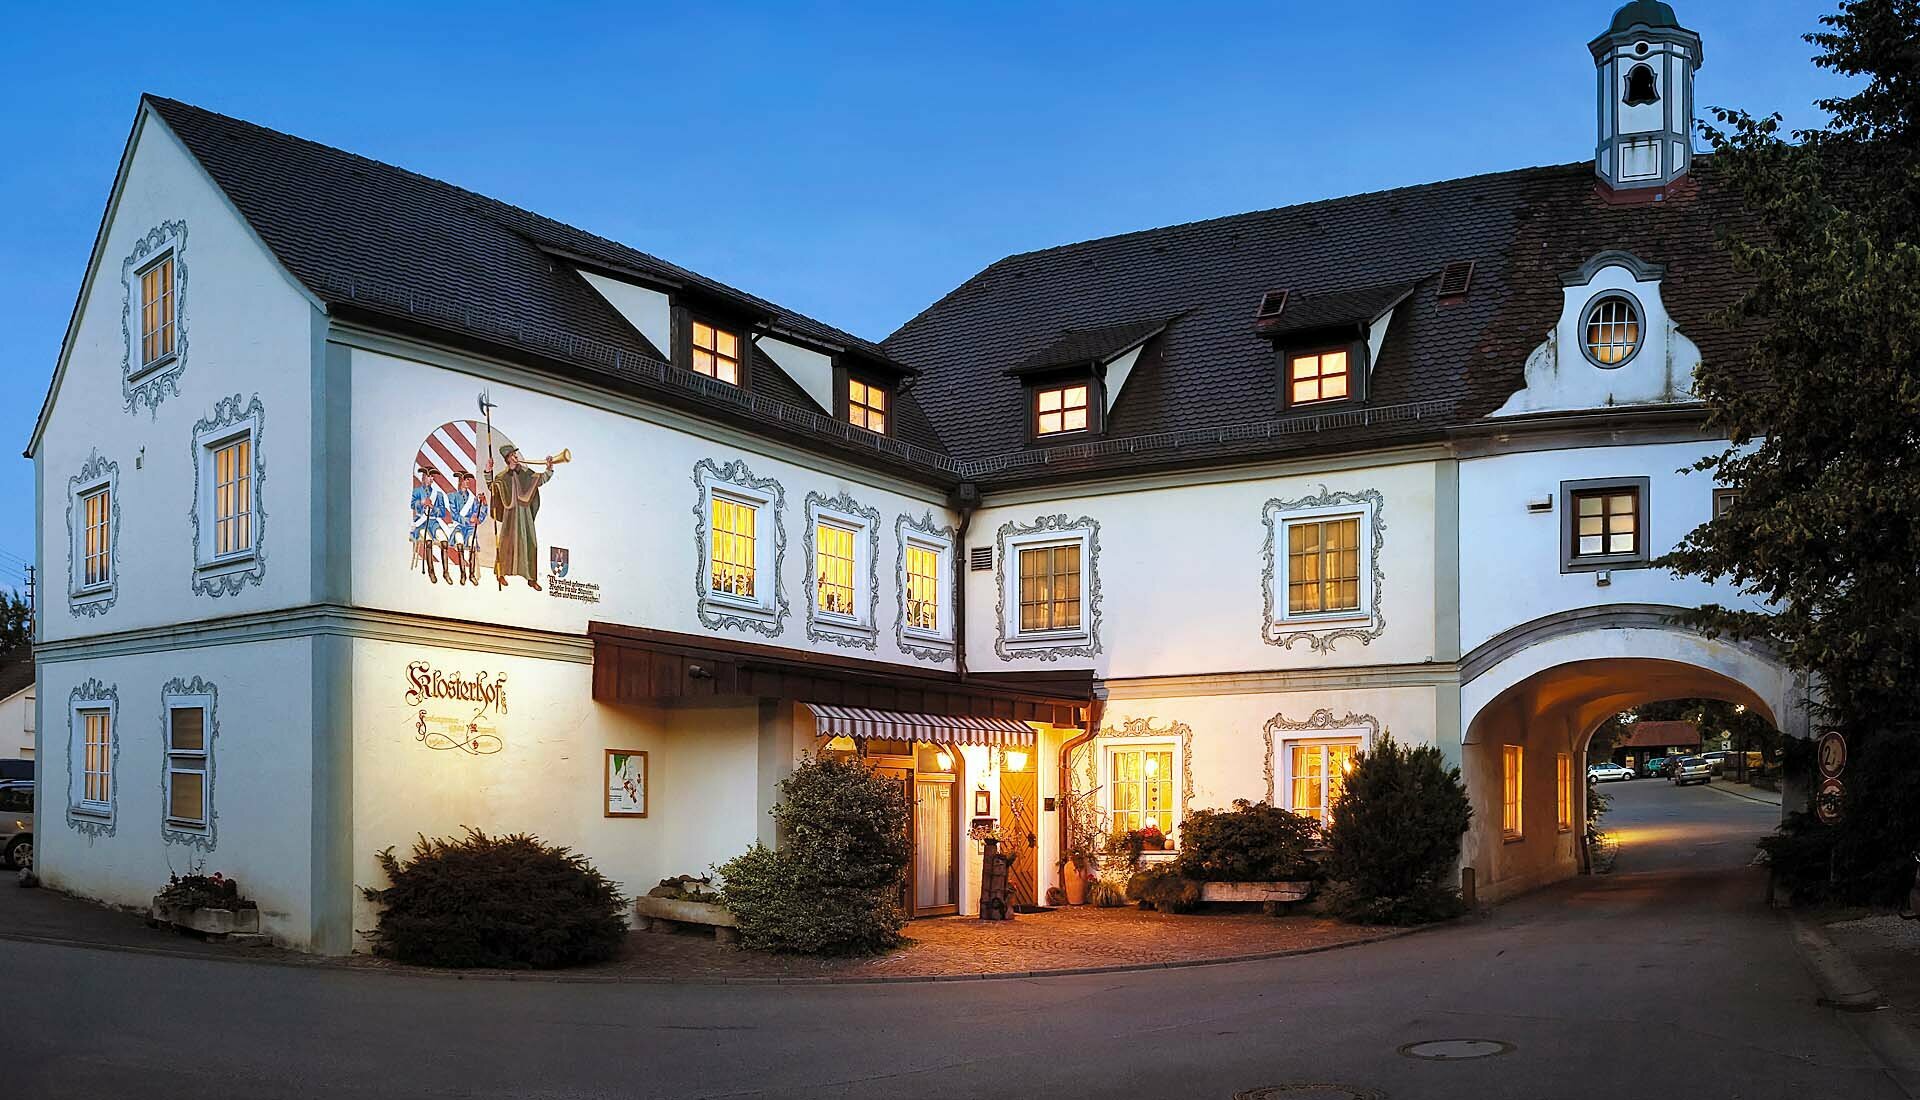 7 Tage Oberschwaben Erleben! – Hotel-Restaurant Klosterhof (3 Sterne) in Gutenzell, Baden-Württemberg inkl. Halbpension